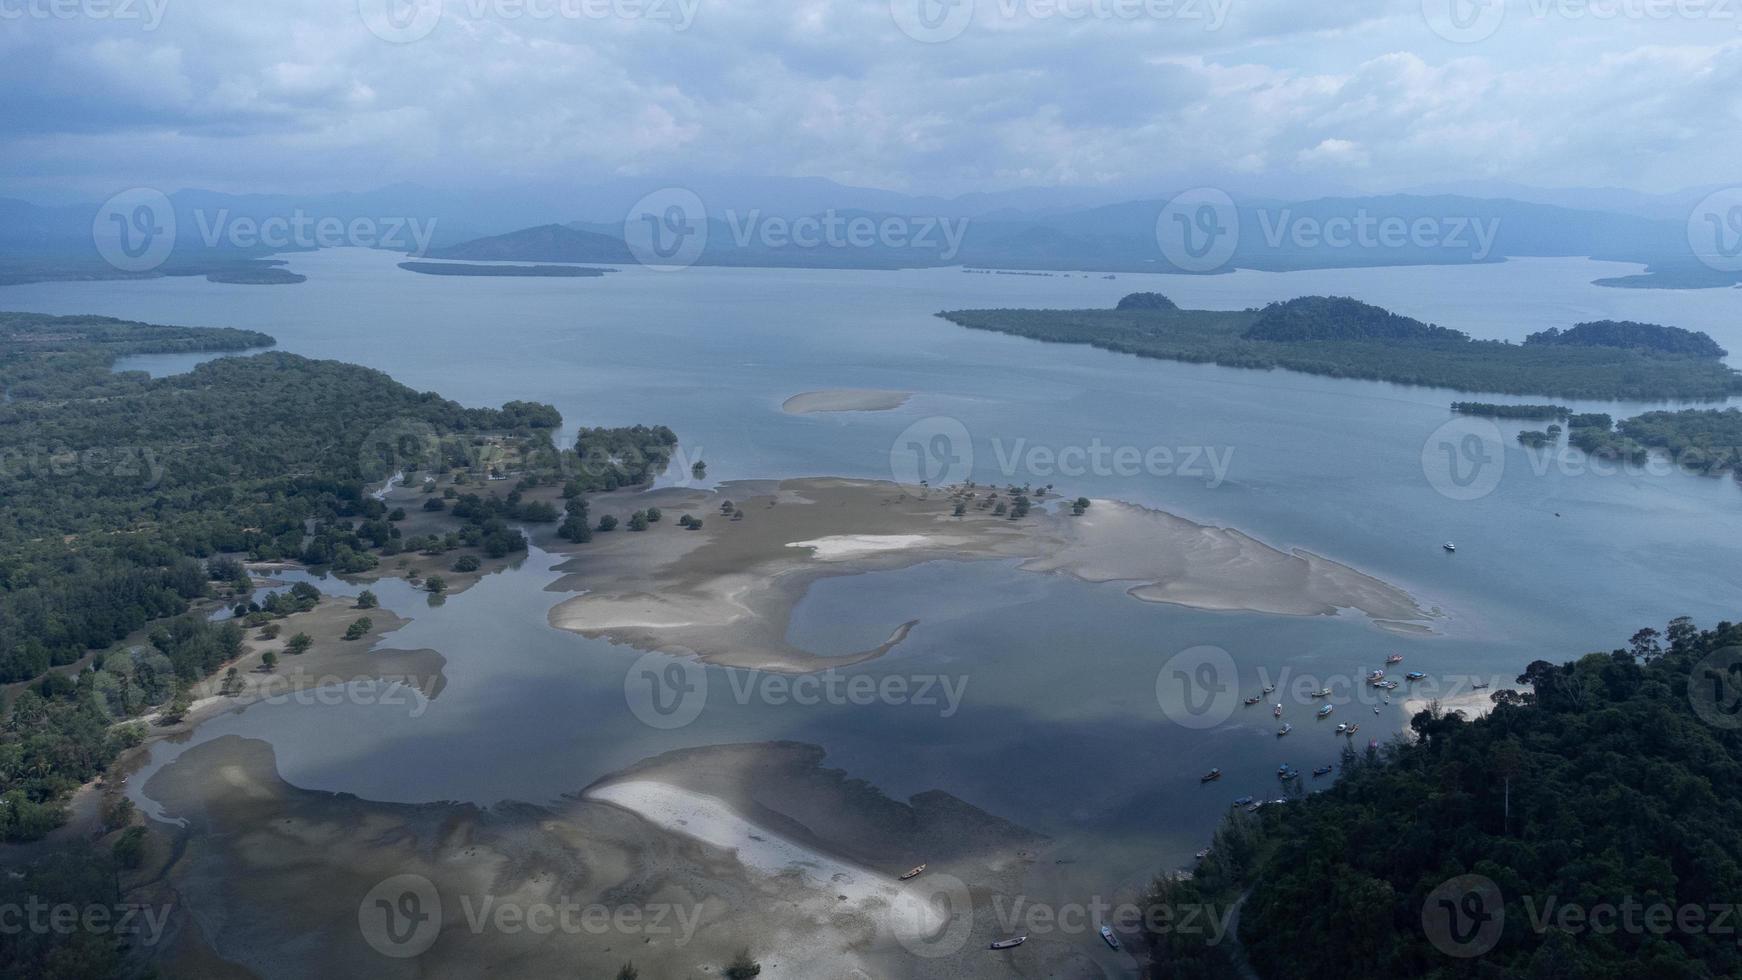 belle mer au parc national de laem son, ranong, thaïlande. dans la zone du port de pêche local et en arrière-plan de la belle côte de la nature par vue aérienne depuis un drone. photo